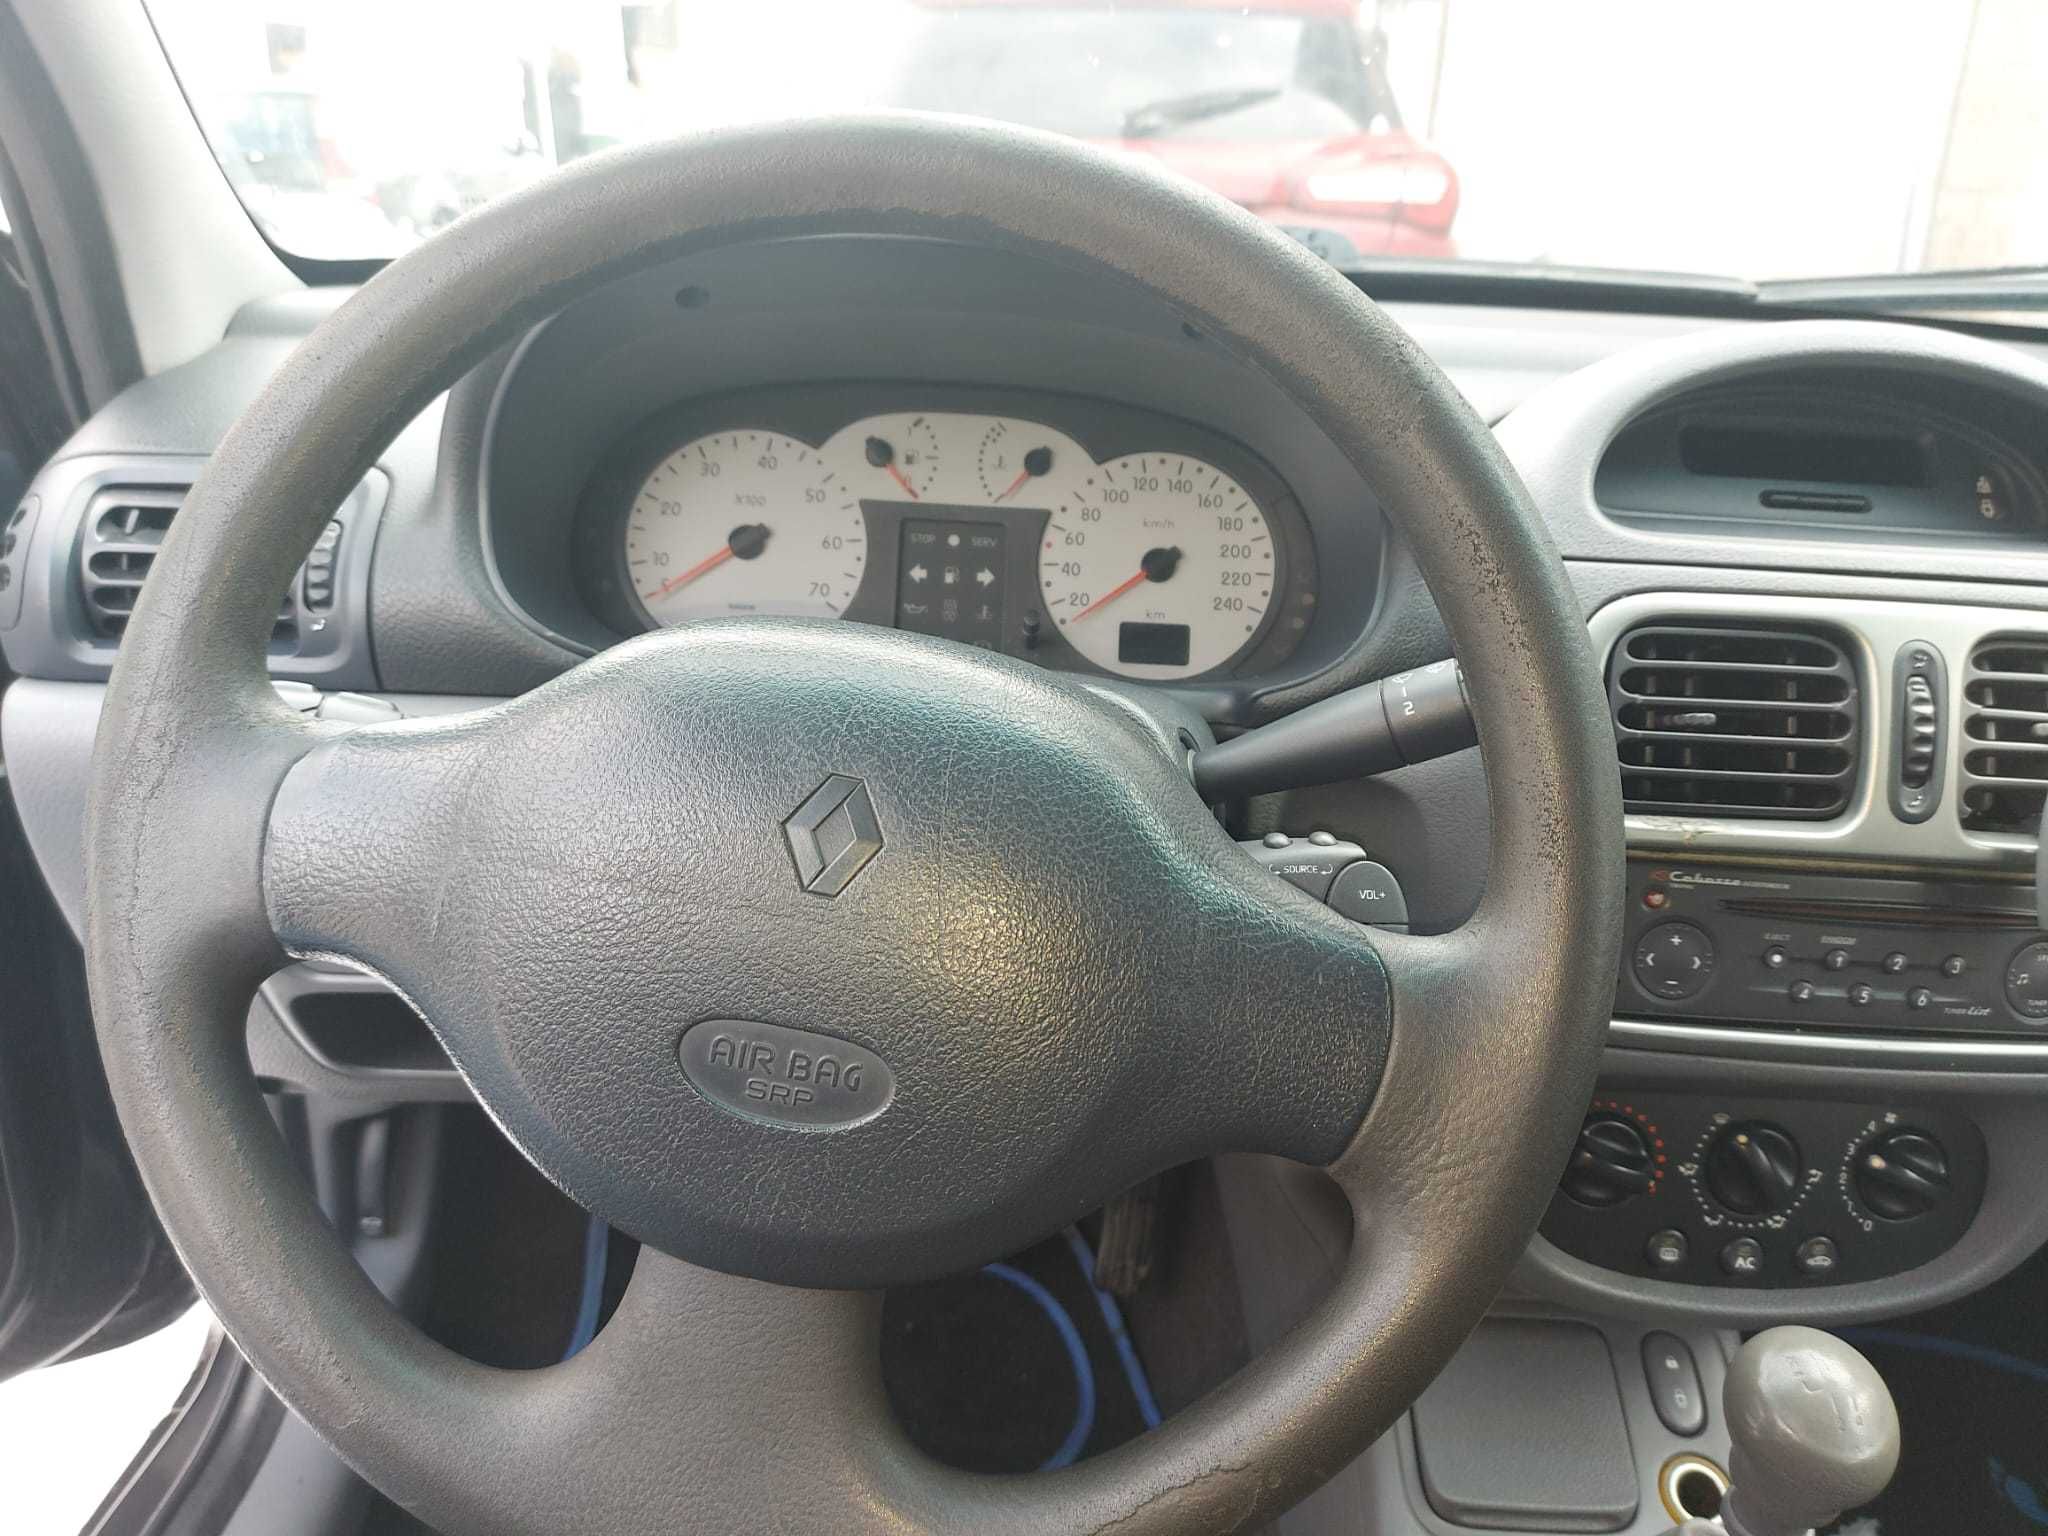 Renault Clio 1.4i 2000